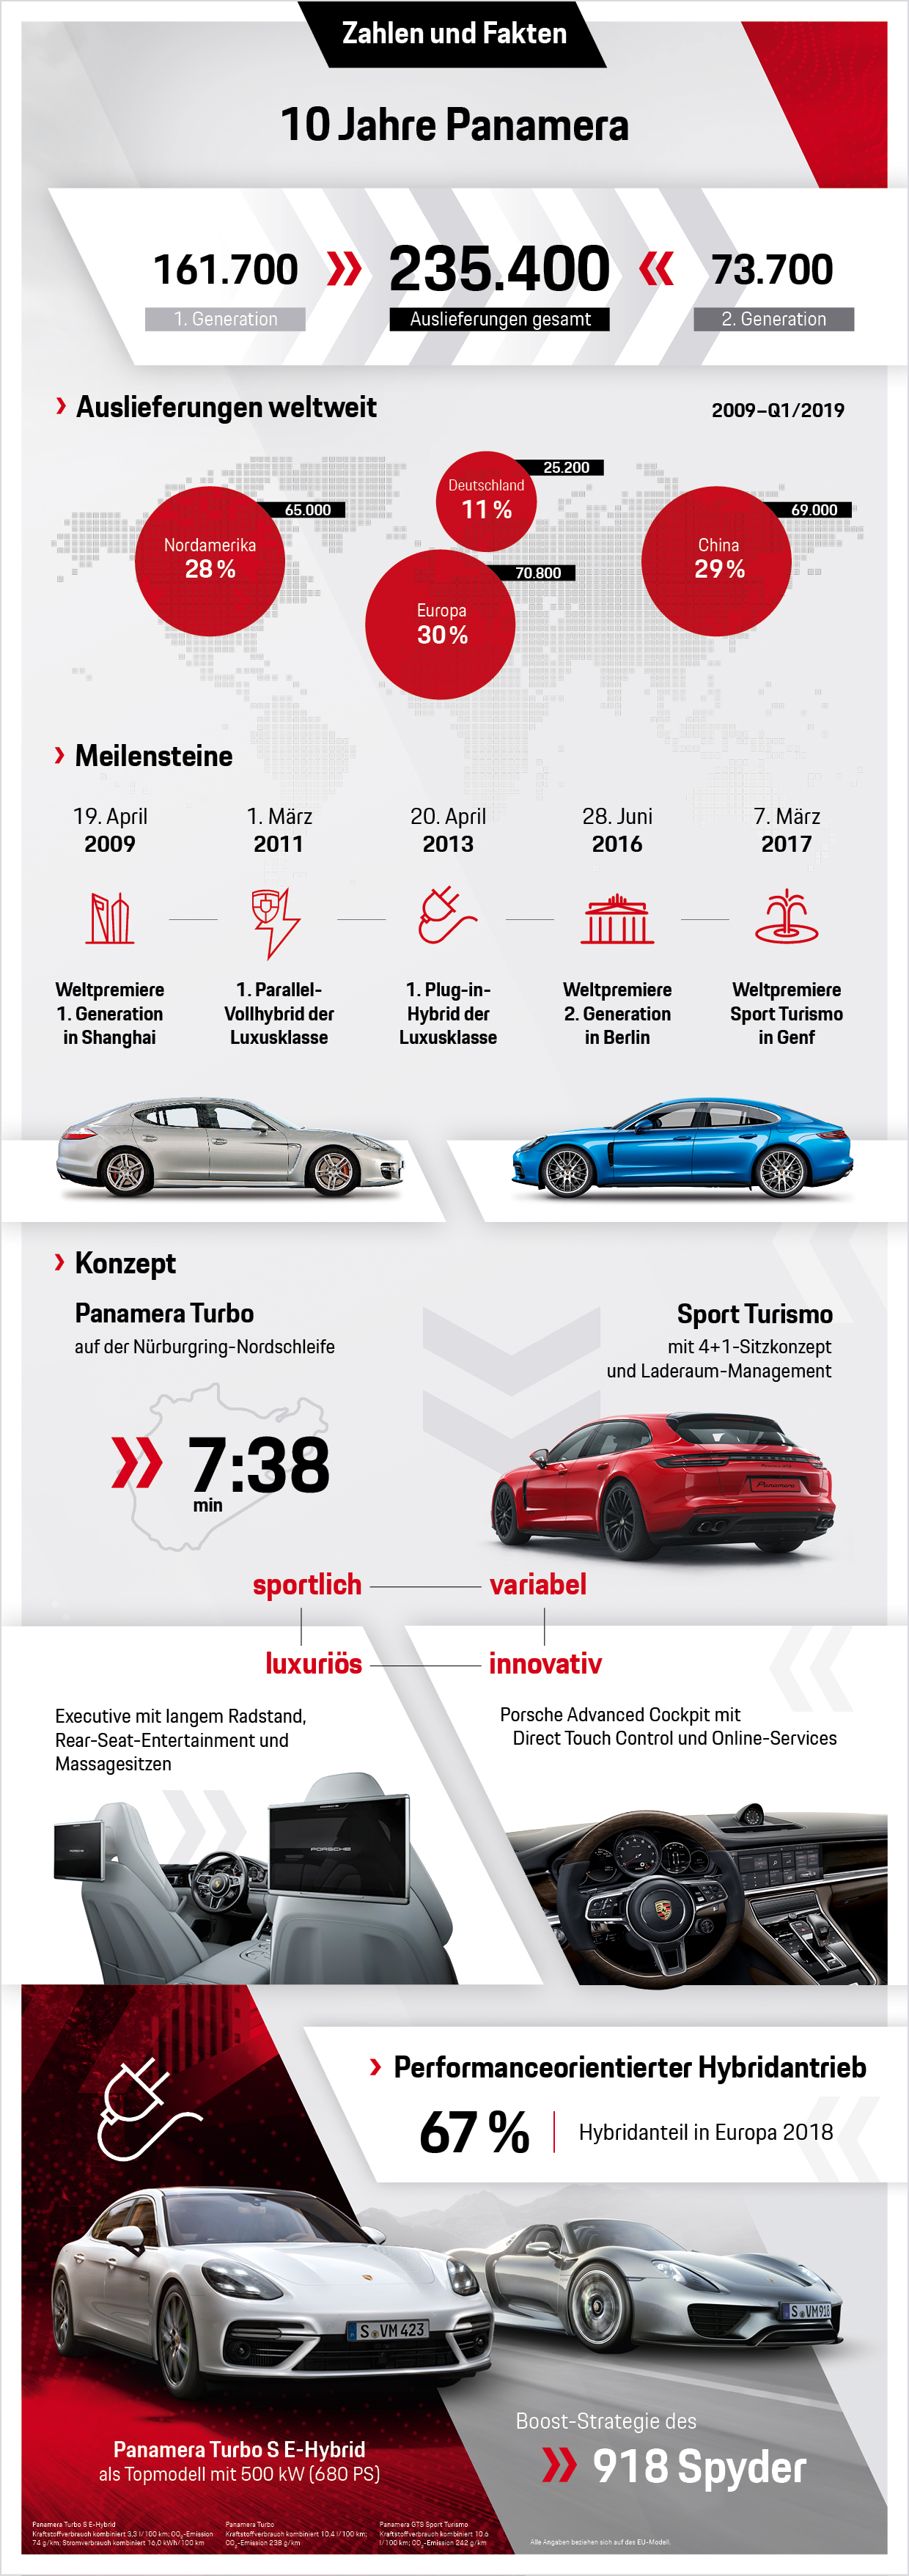 10 Jahre Panamera: Zahlen und Fakten, Infografik, 2019, Porsche AG